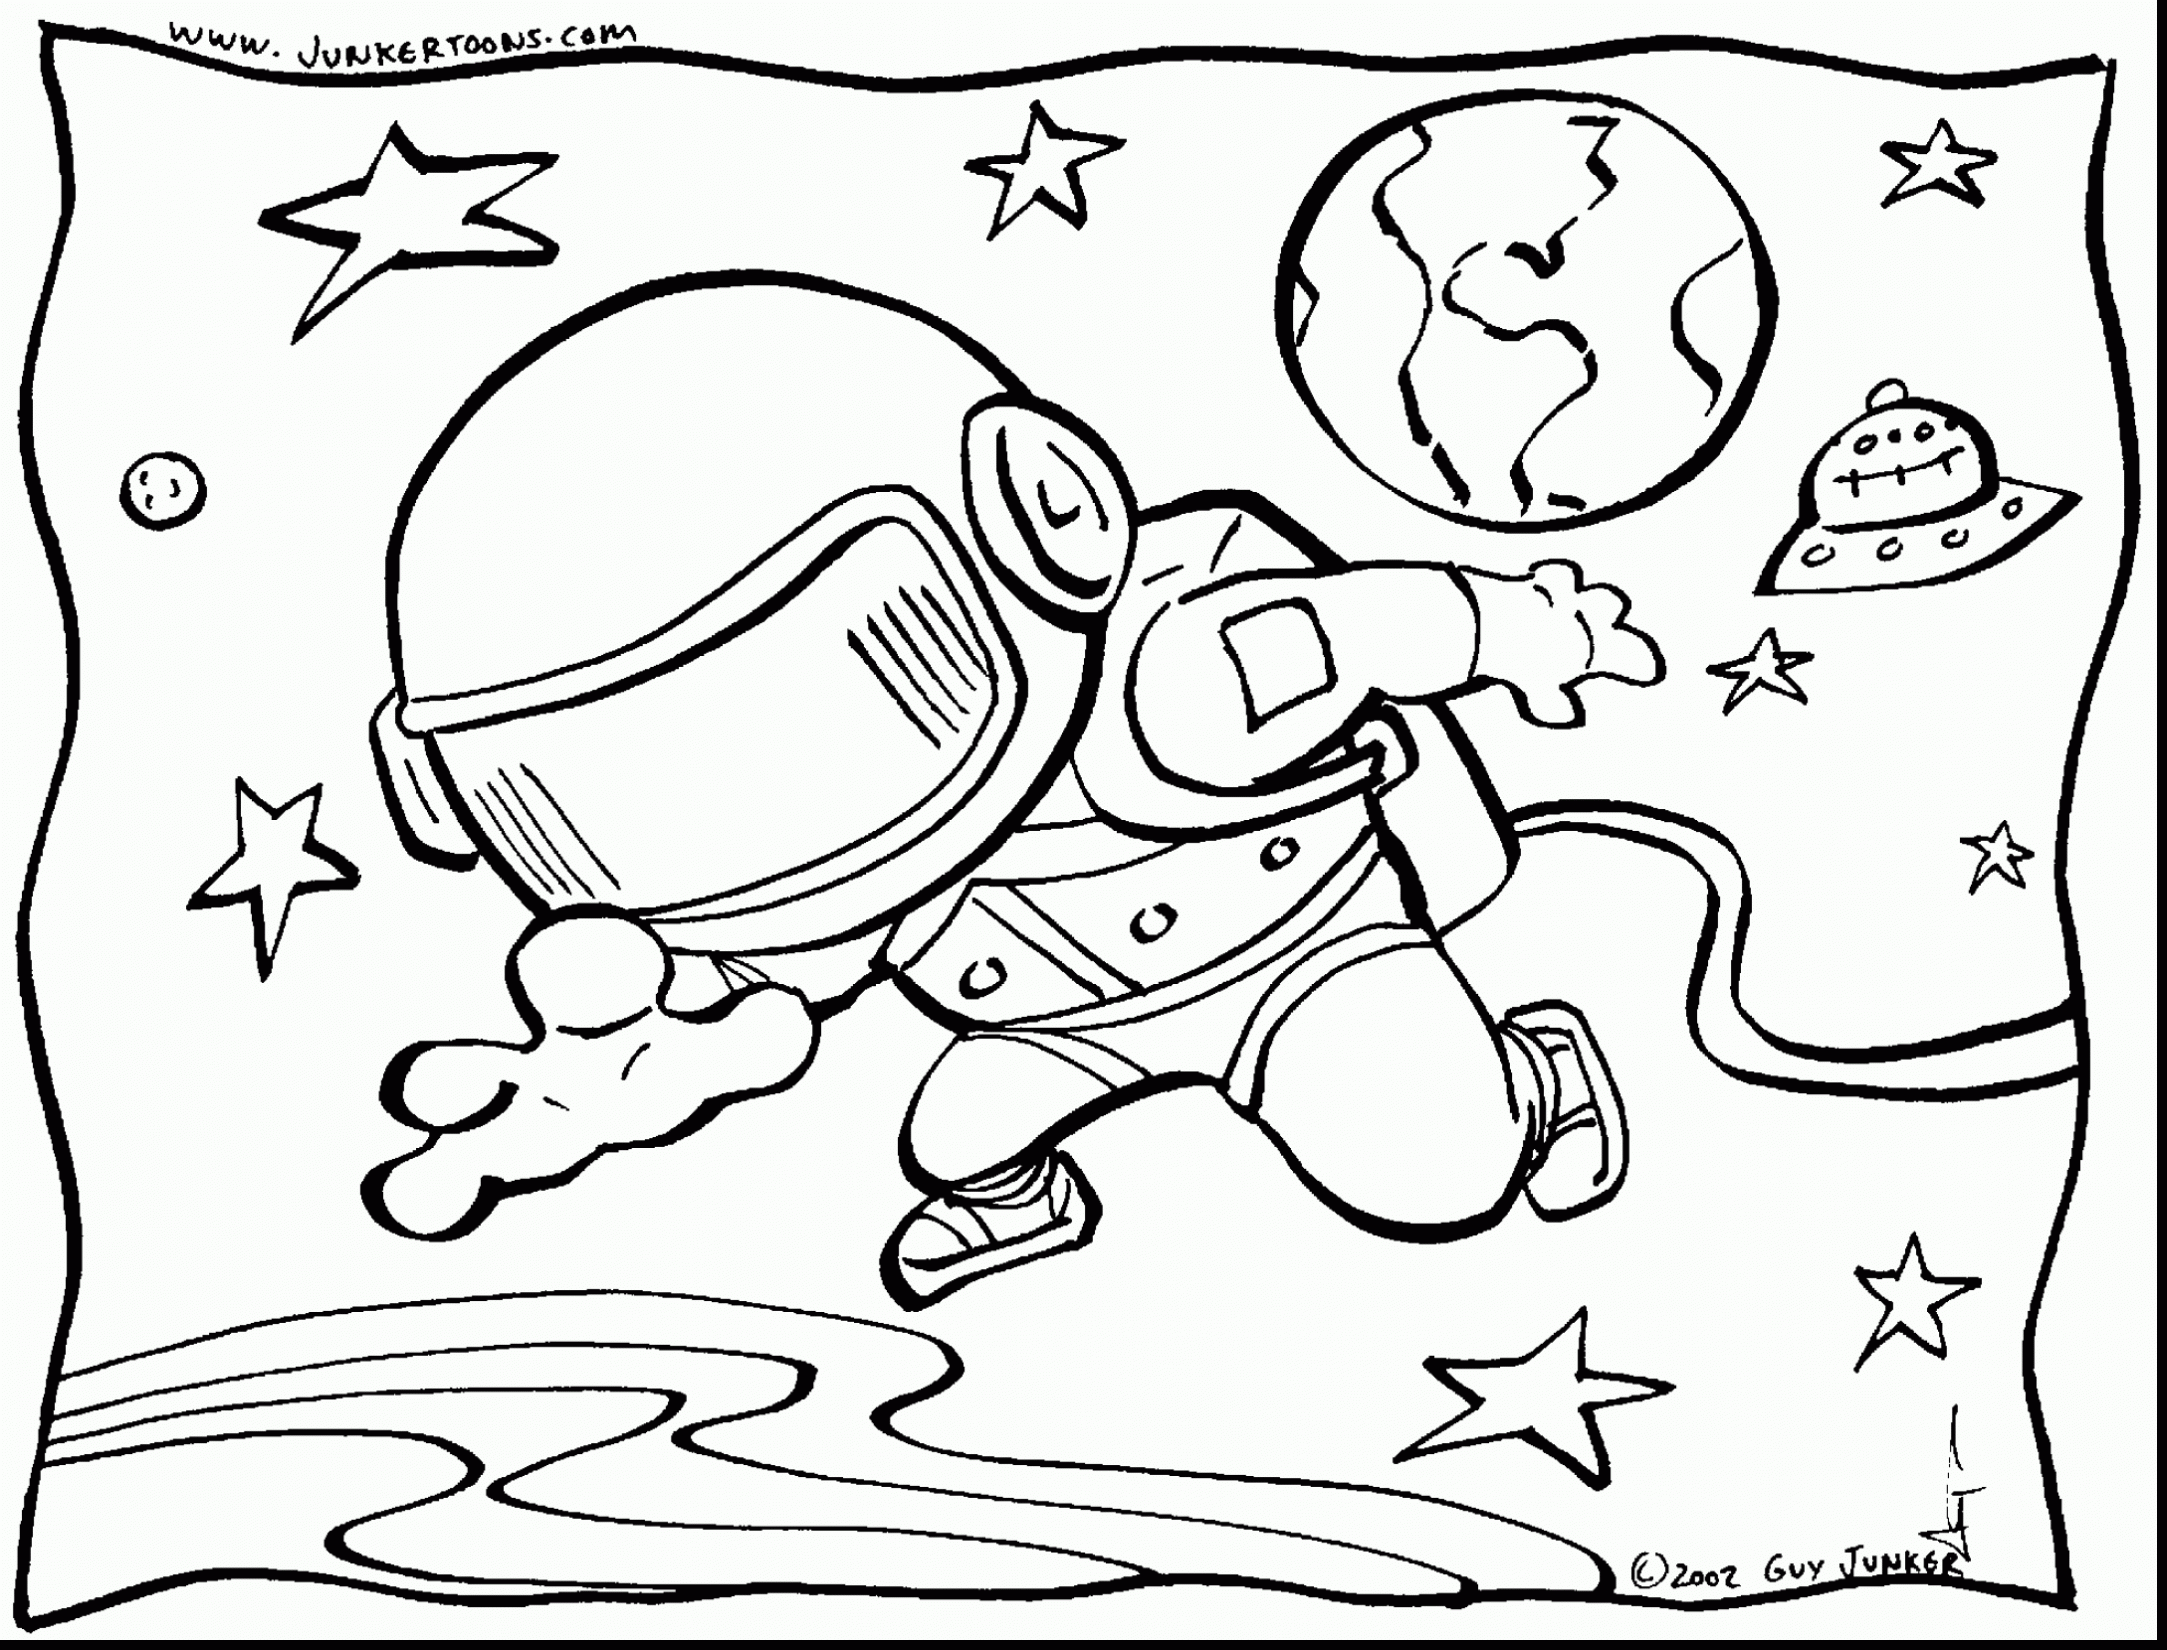 Раскраски 12 апреля день космонавтики для детей. Раскраска. В космосе. Космос раскраска для детей. Раскраска космонавт в космосе. Раскраска на тему космос для детей.